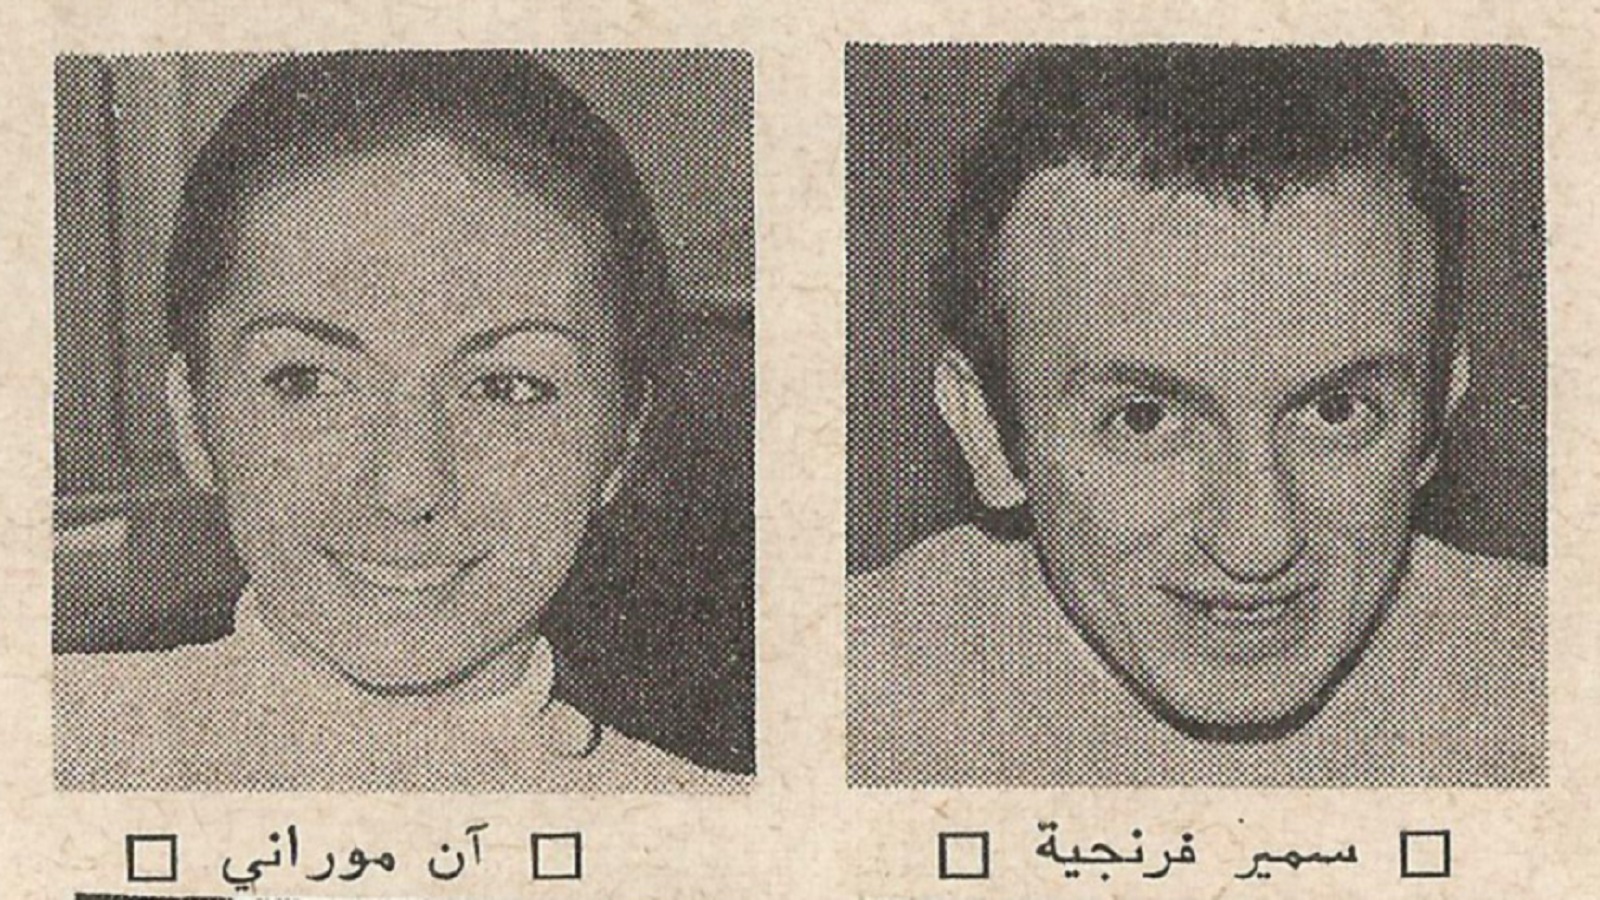 سمير فرنجية وآن موراني، ممثلا التيار اليساري في الجامعة اليسوعية